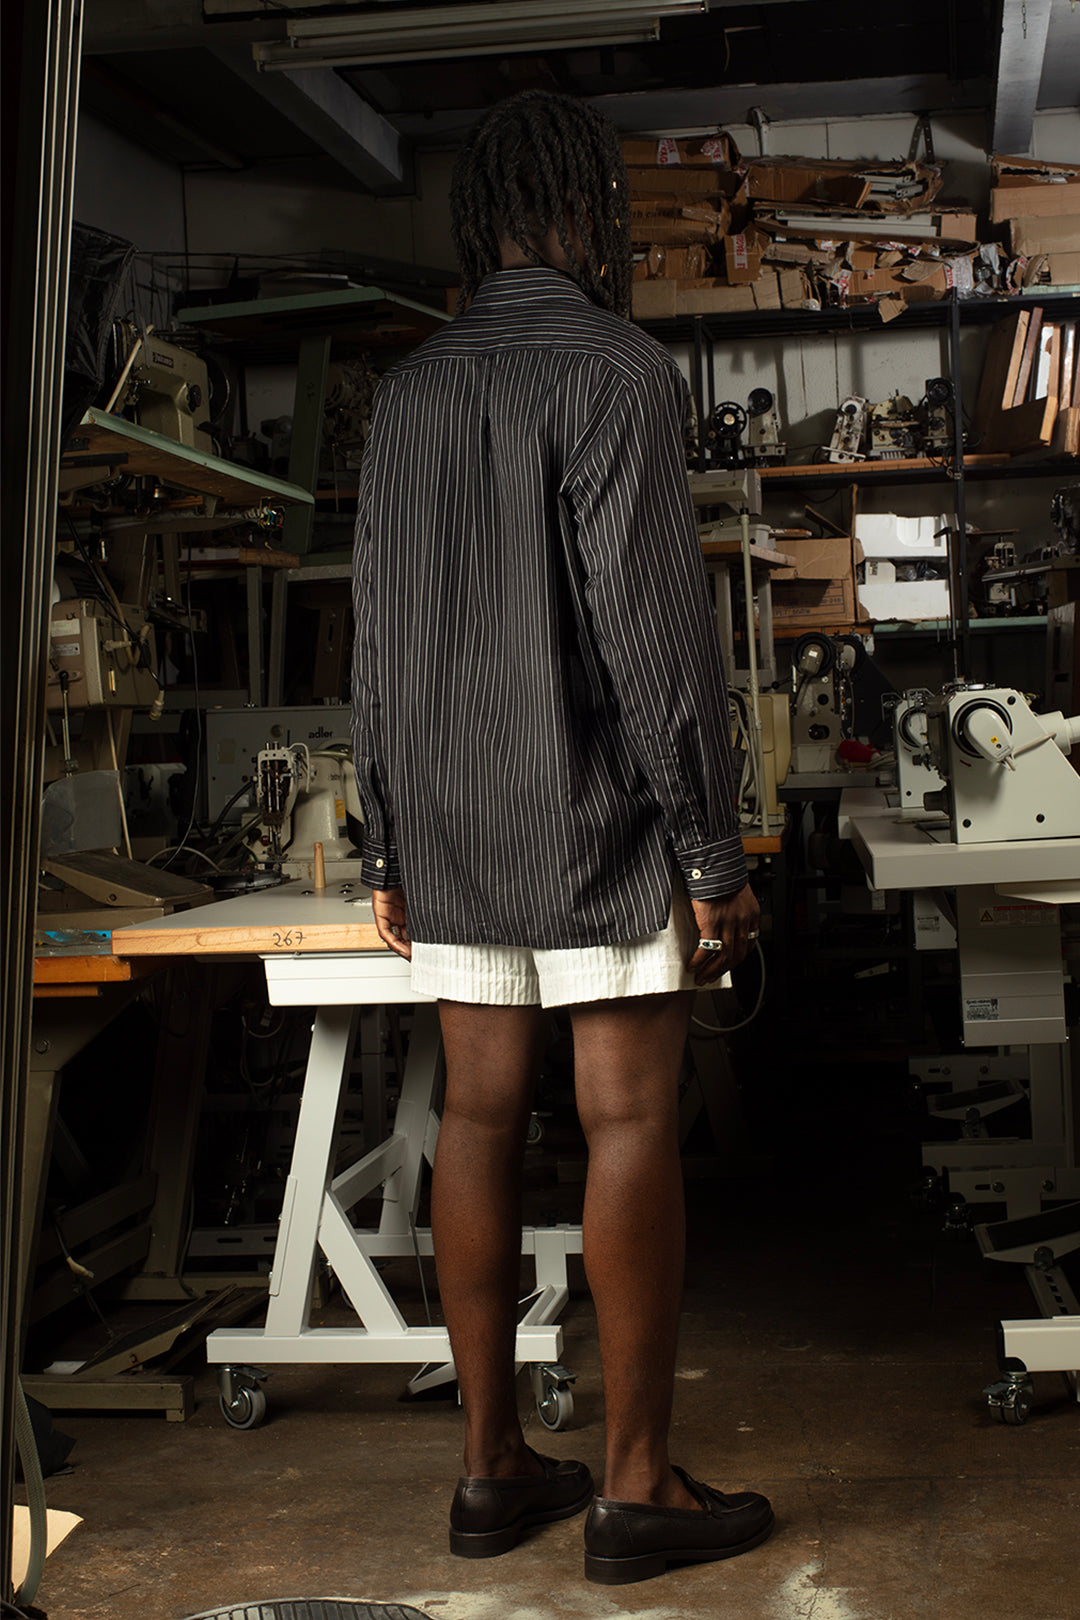 Chemise de luxe pour homme Erevan, à grand col en toile de coton noire à rayure blanche fabriquée en france